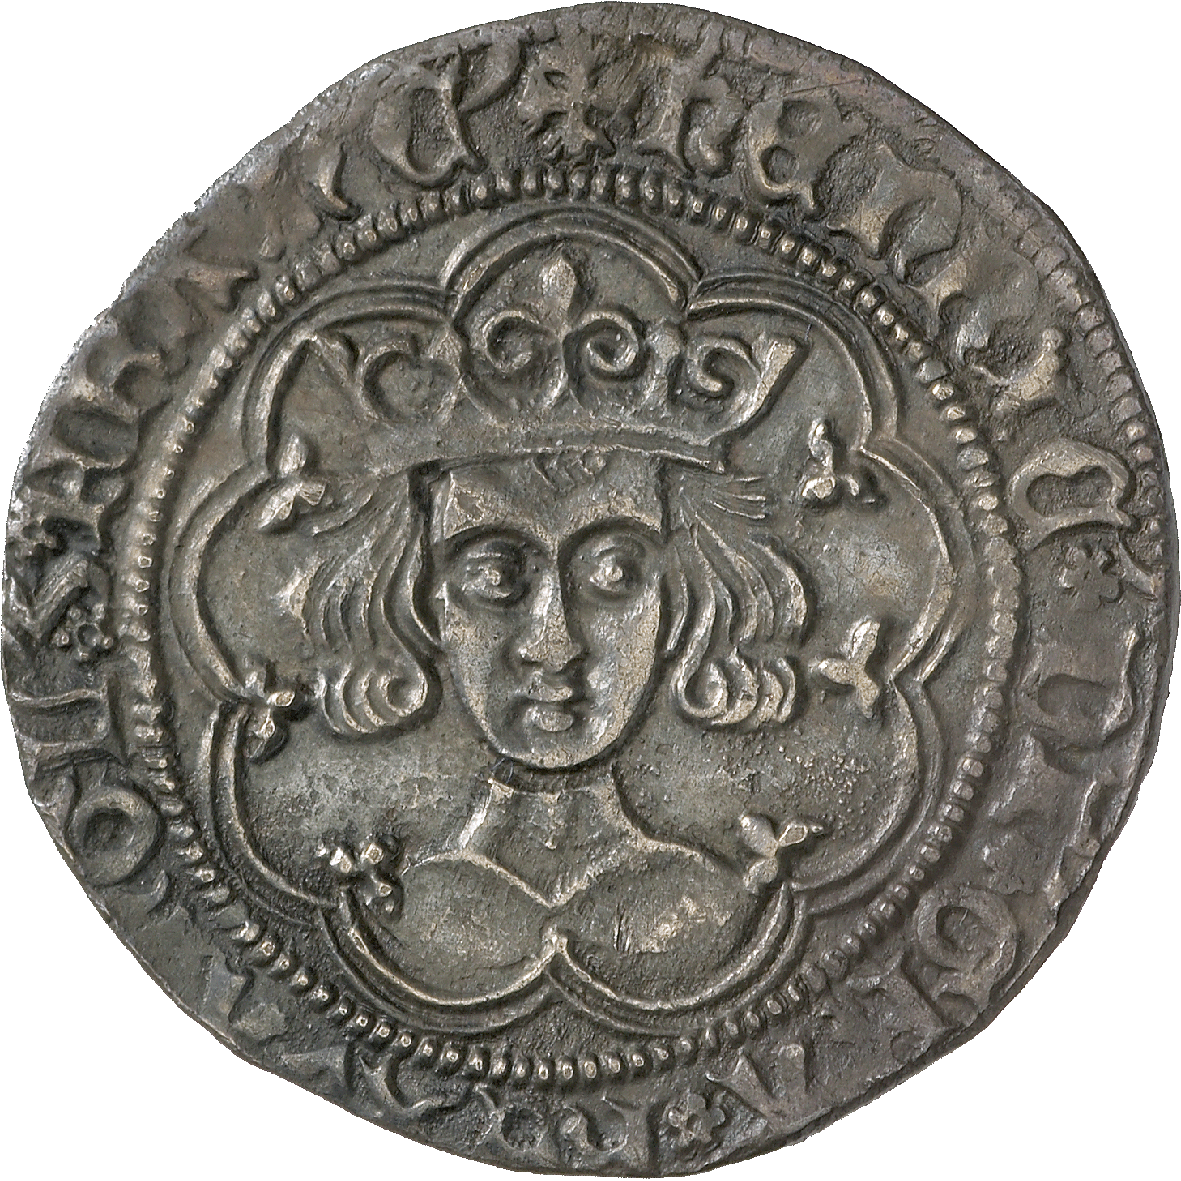 Königreiche England und Frankreich, Heinrich VI., Groat (obverse)